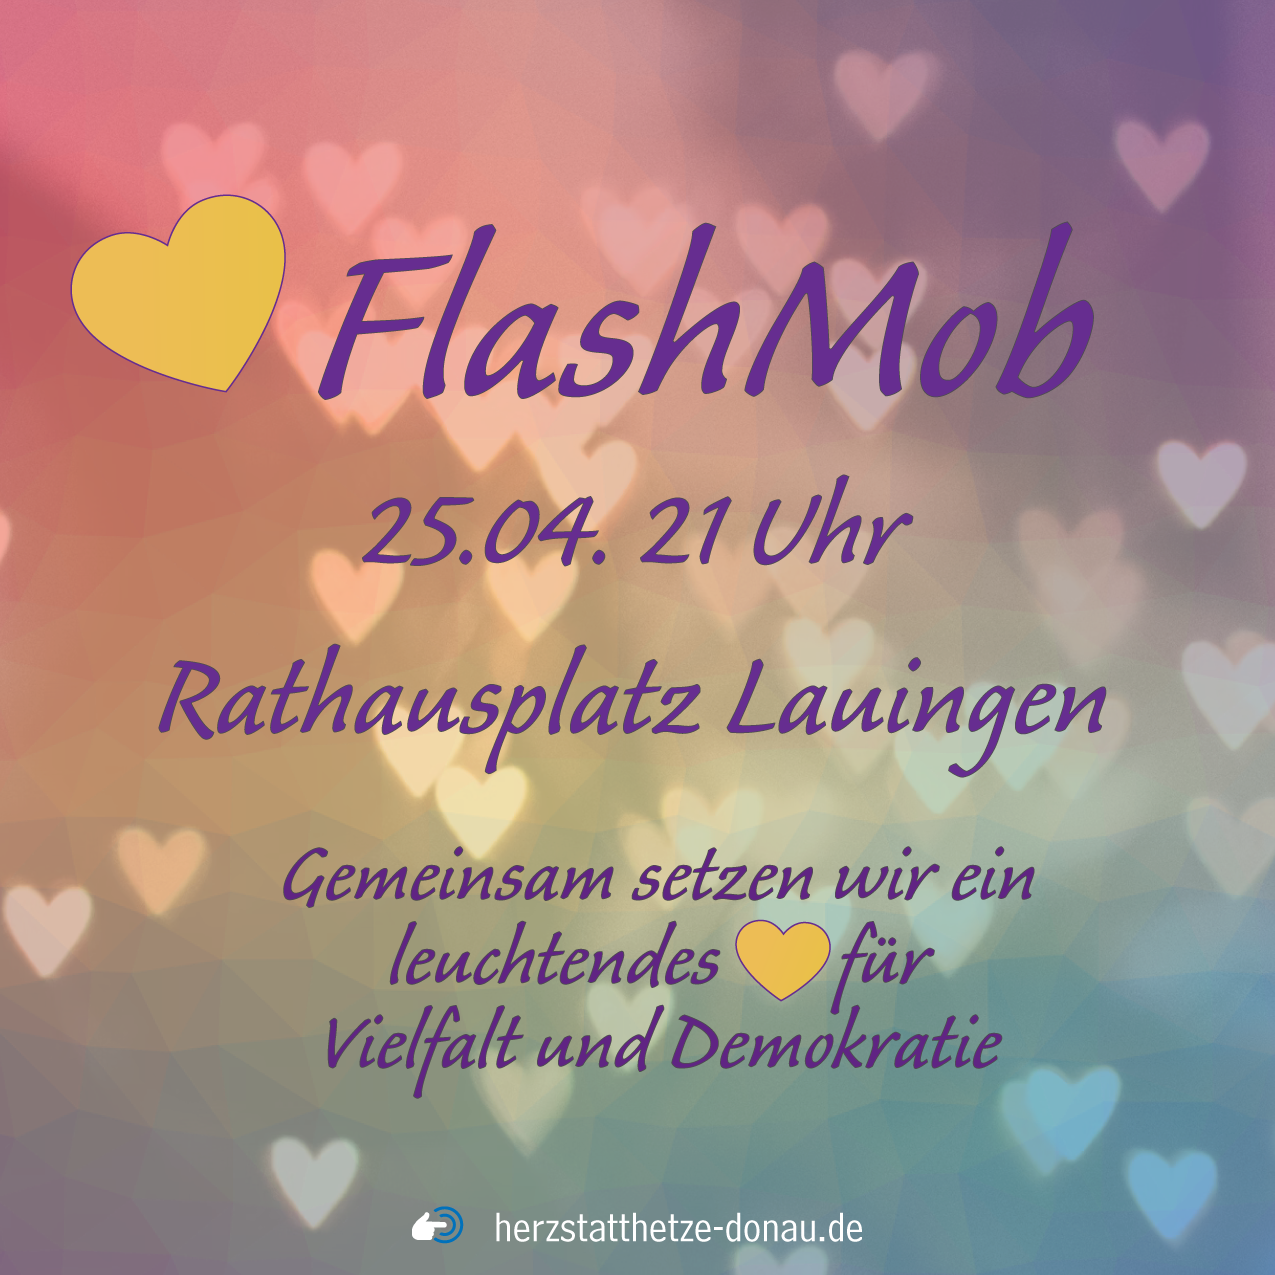 FlashMob 